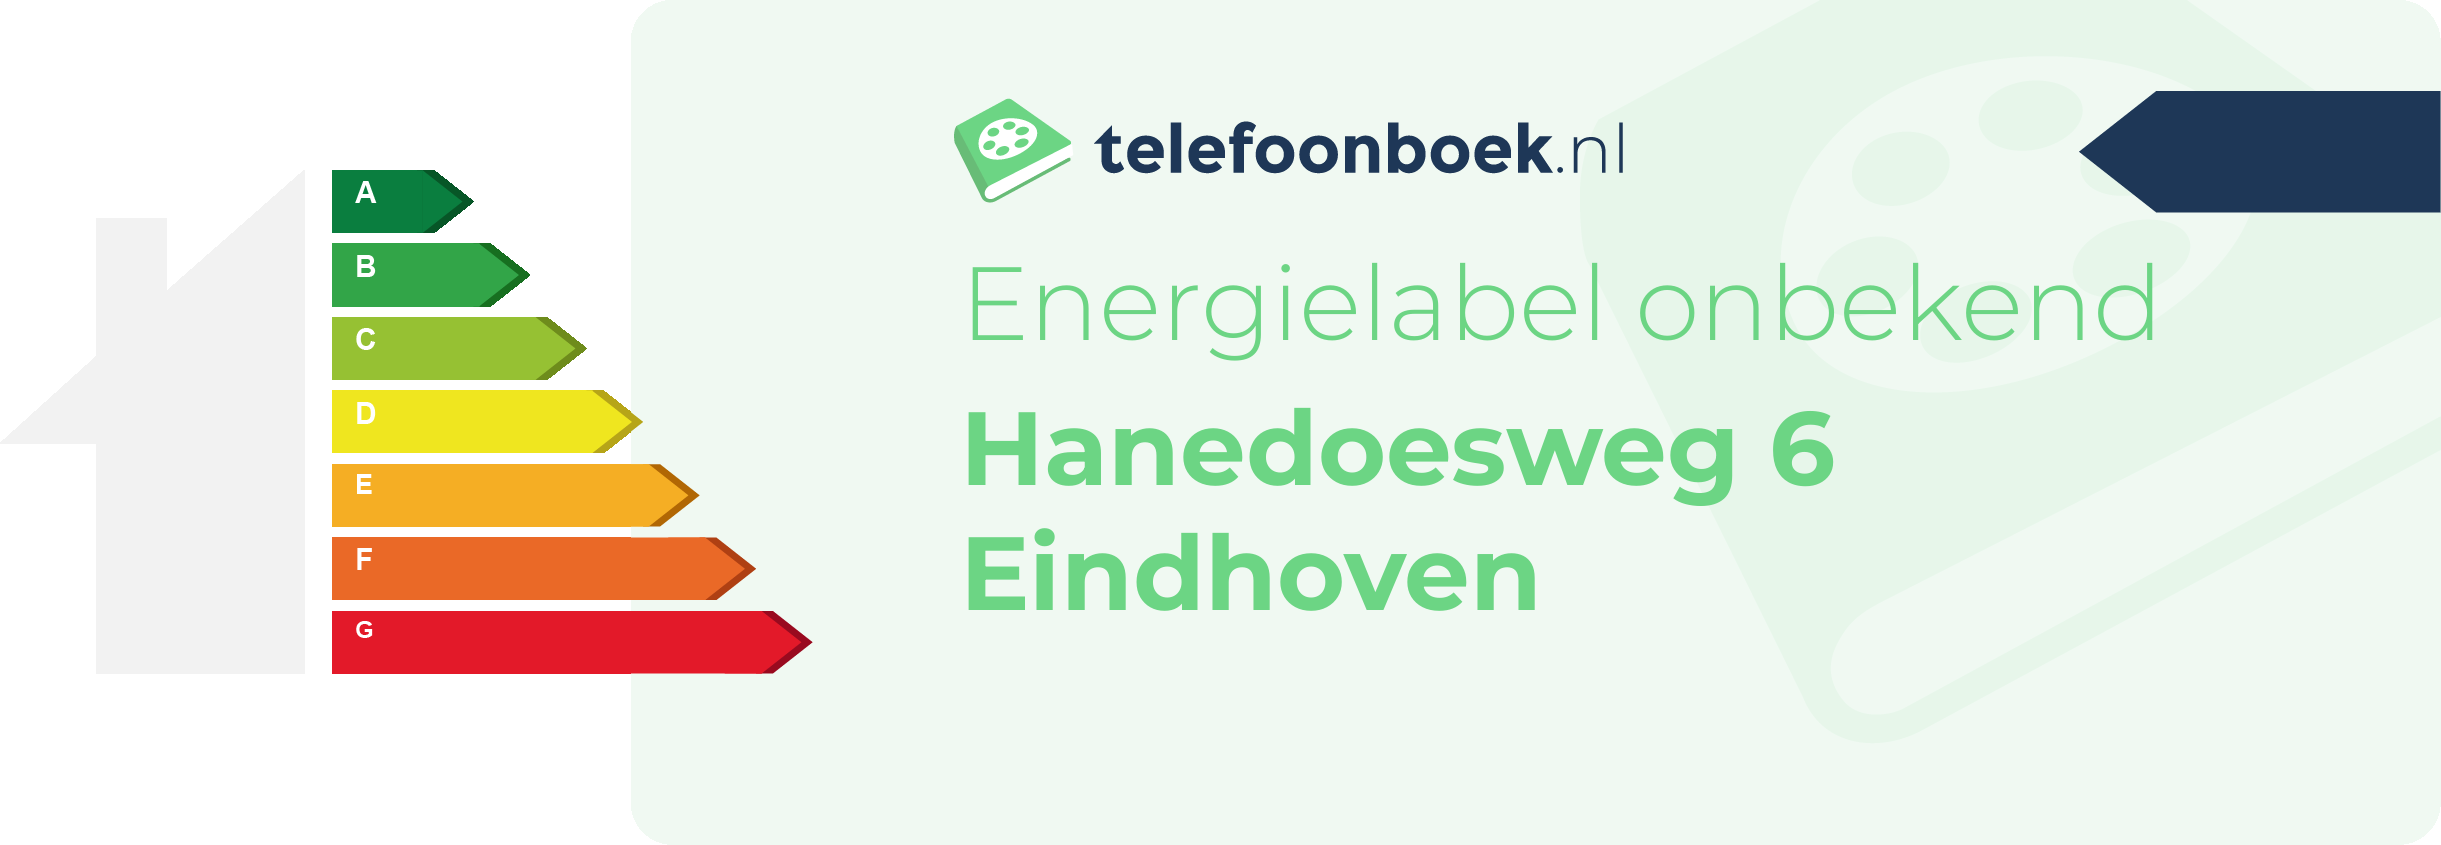 Energielabel Hanedoesweg 6 Eindhoven